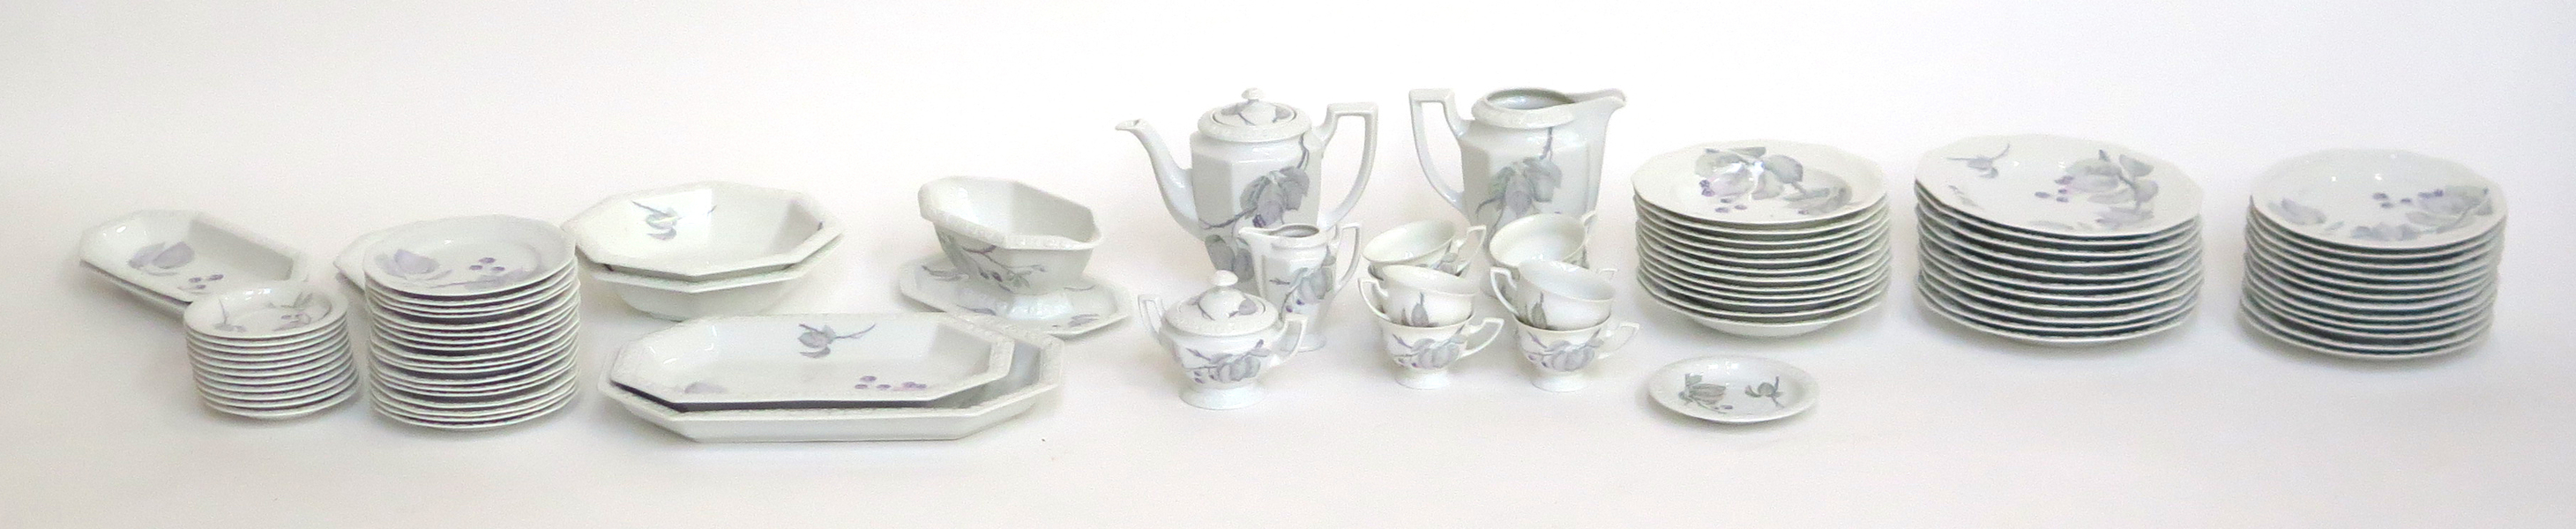 Mat- och kaffeservis, porslin, Maria Björnbär, cirka 70 delar, design 1916, _22190a_lg.jpeg